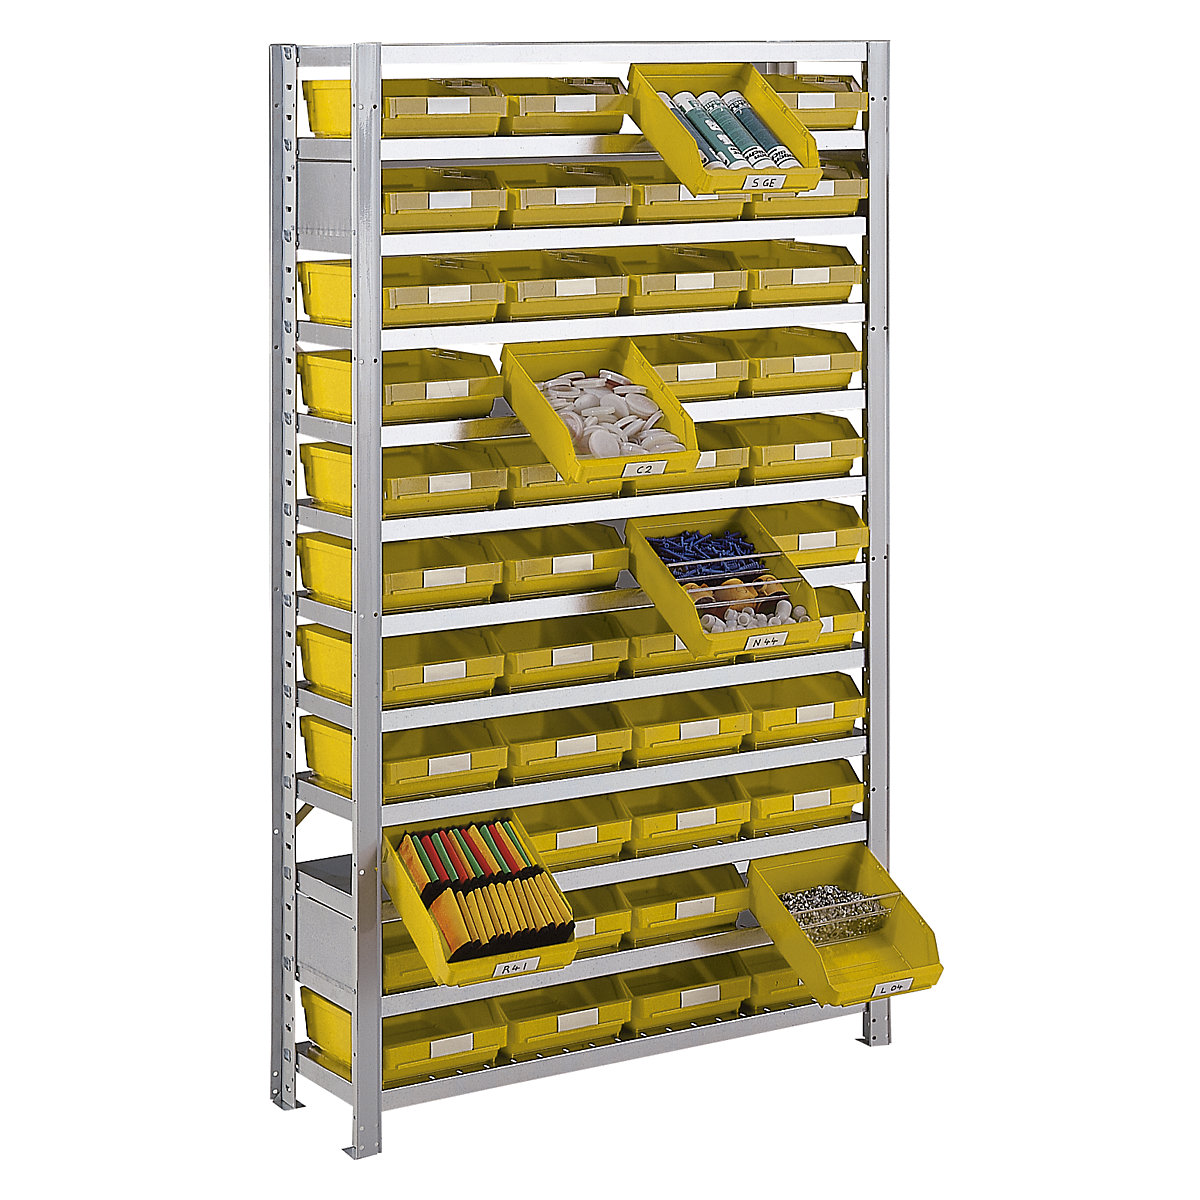 Összedugaszolós állvány dobozokkal – STEMO, állványmagasság 1790 mm, alapállvány, 400 mm mély, 32 sárga doboz-18